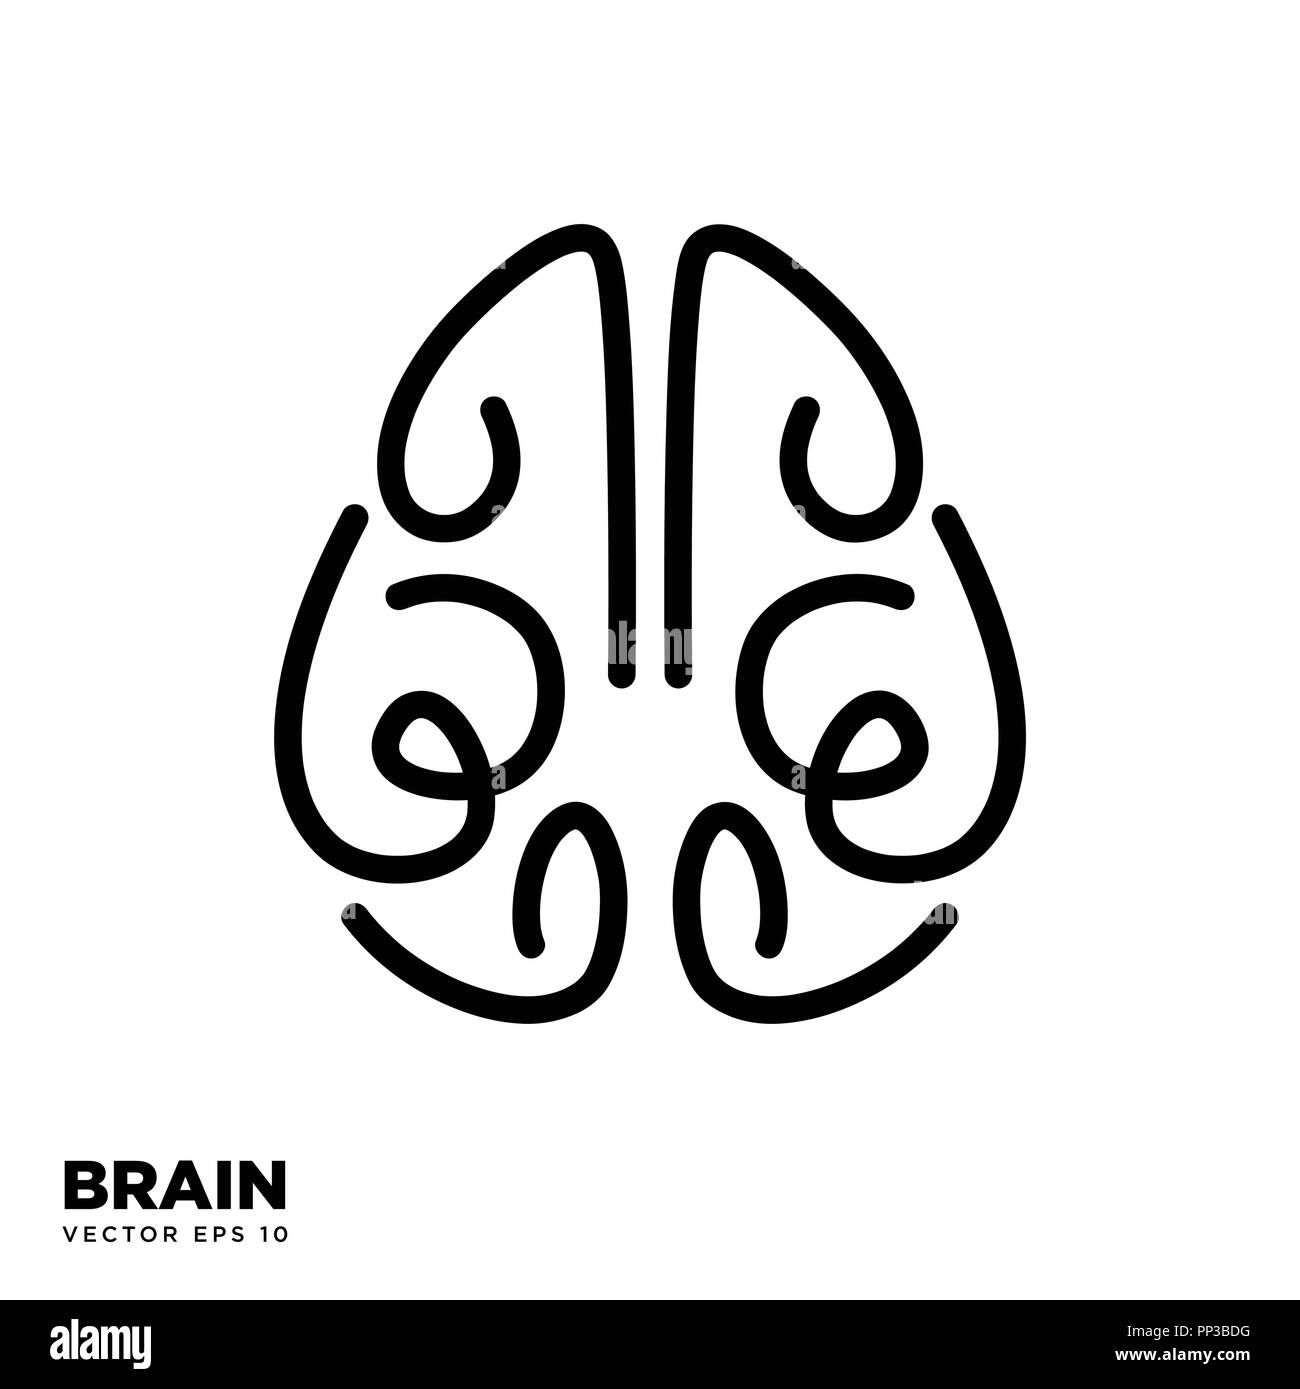 Gehirn silhouette Symbol design vector Vorlage eps 10, Denken Idee Konzept Stock Vektor